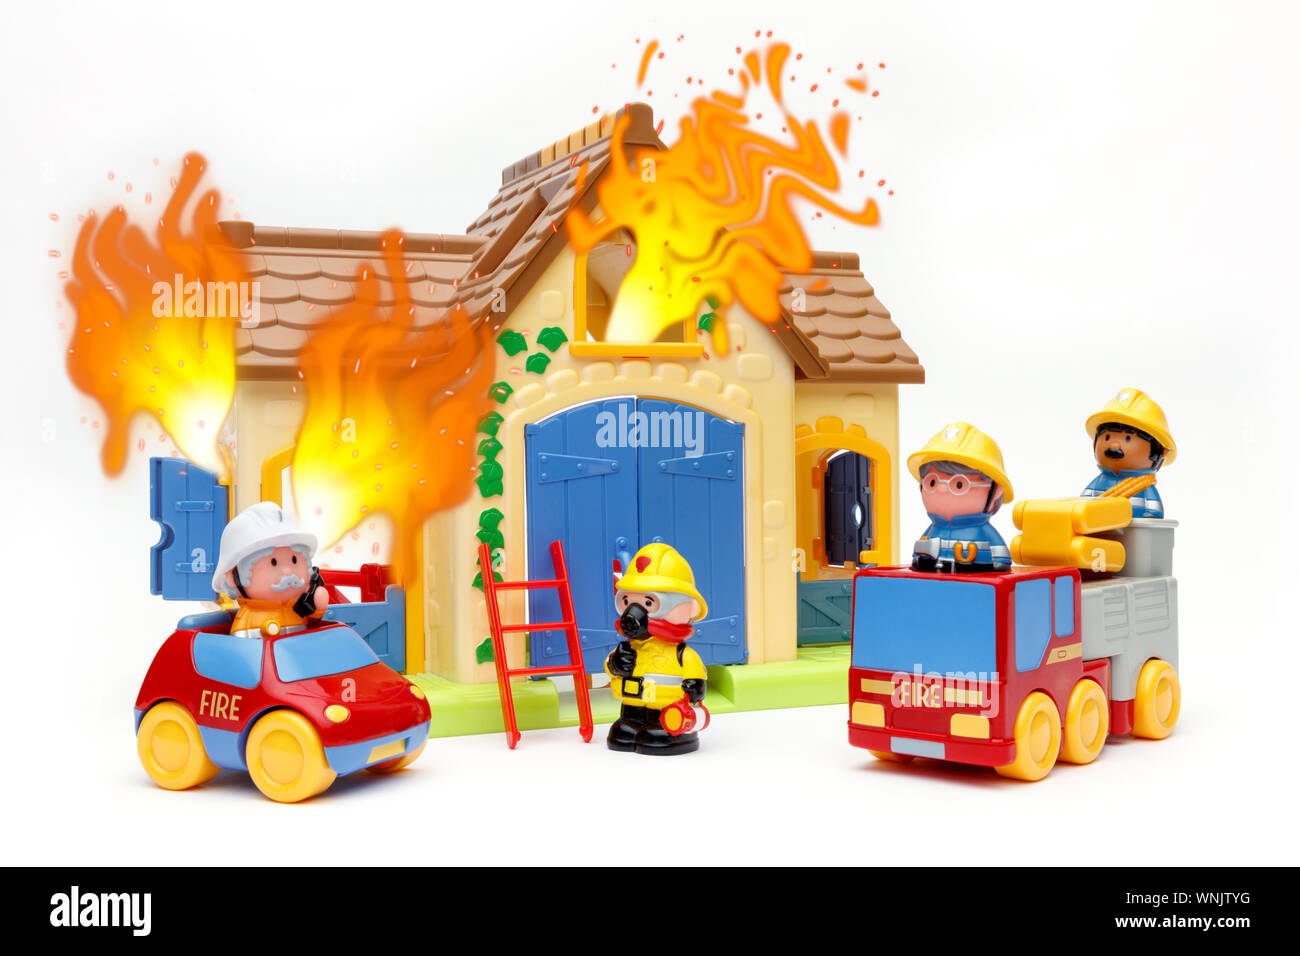 Spielzeug Feuerwehr Bekämpfung ein Spielzeug, das auf Feuer, mit Flammen  aus den Fenstern, Schuß auf weißem Hintergrund Stockfotografie - Alamy